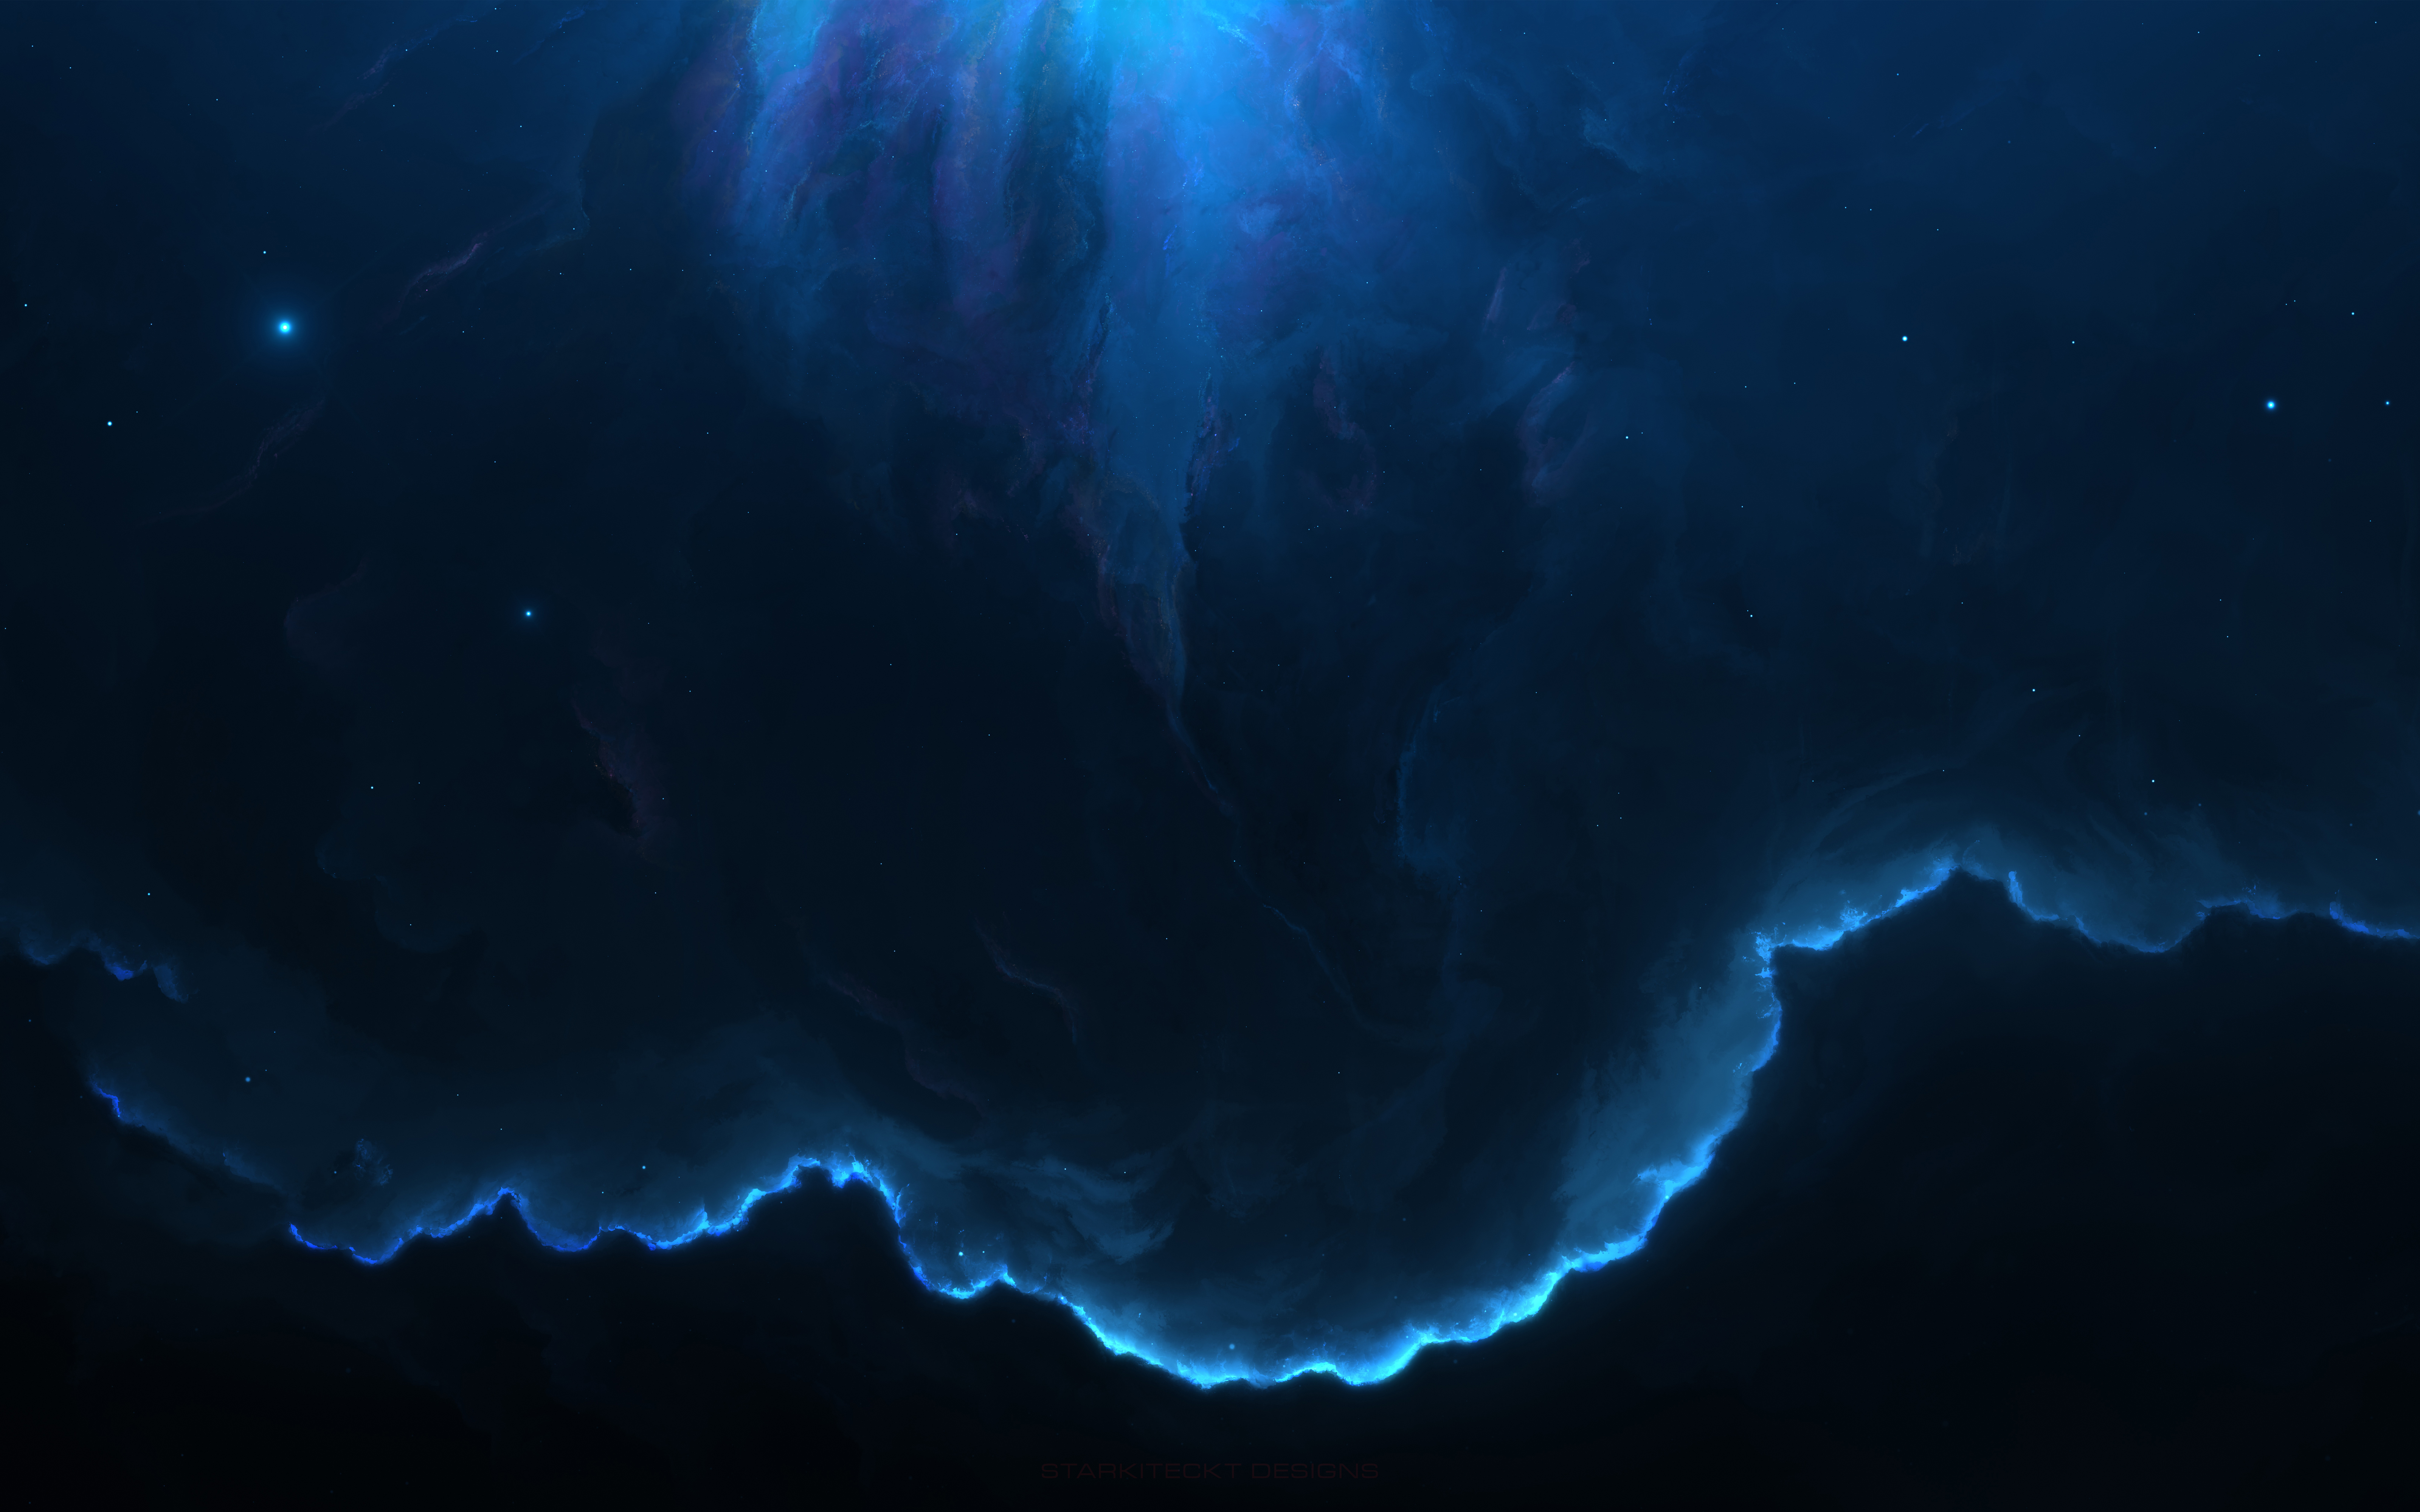 Nếu bạn đam mê vũ trụ và thiên hà, tại sao không thử một hình nền tuyệt vô giá với Wallpaper 4k Space Nebula 5K 8K? Với chất lượng 4K và 8K siêu nét, bạn sẽ có được trải nghiệm độc đáo và mang lại cảm hứng cho cuộc sống của bạn.